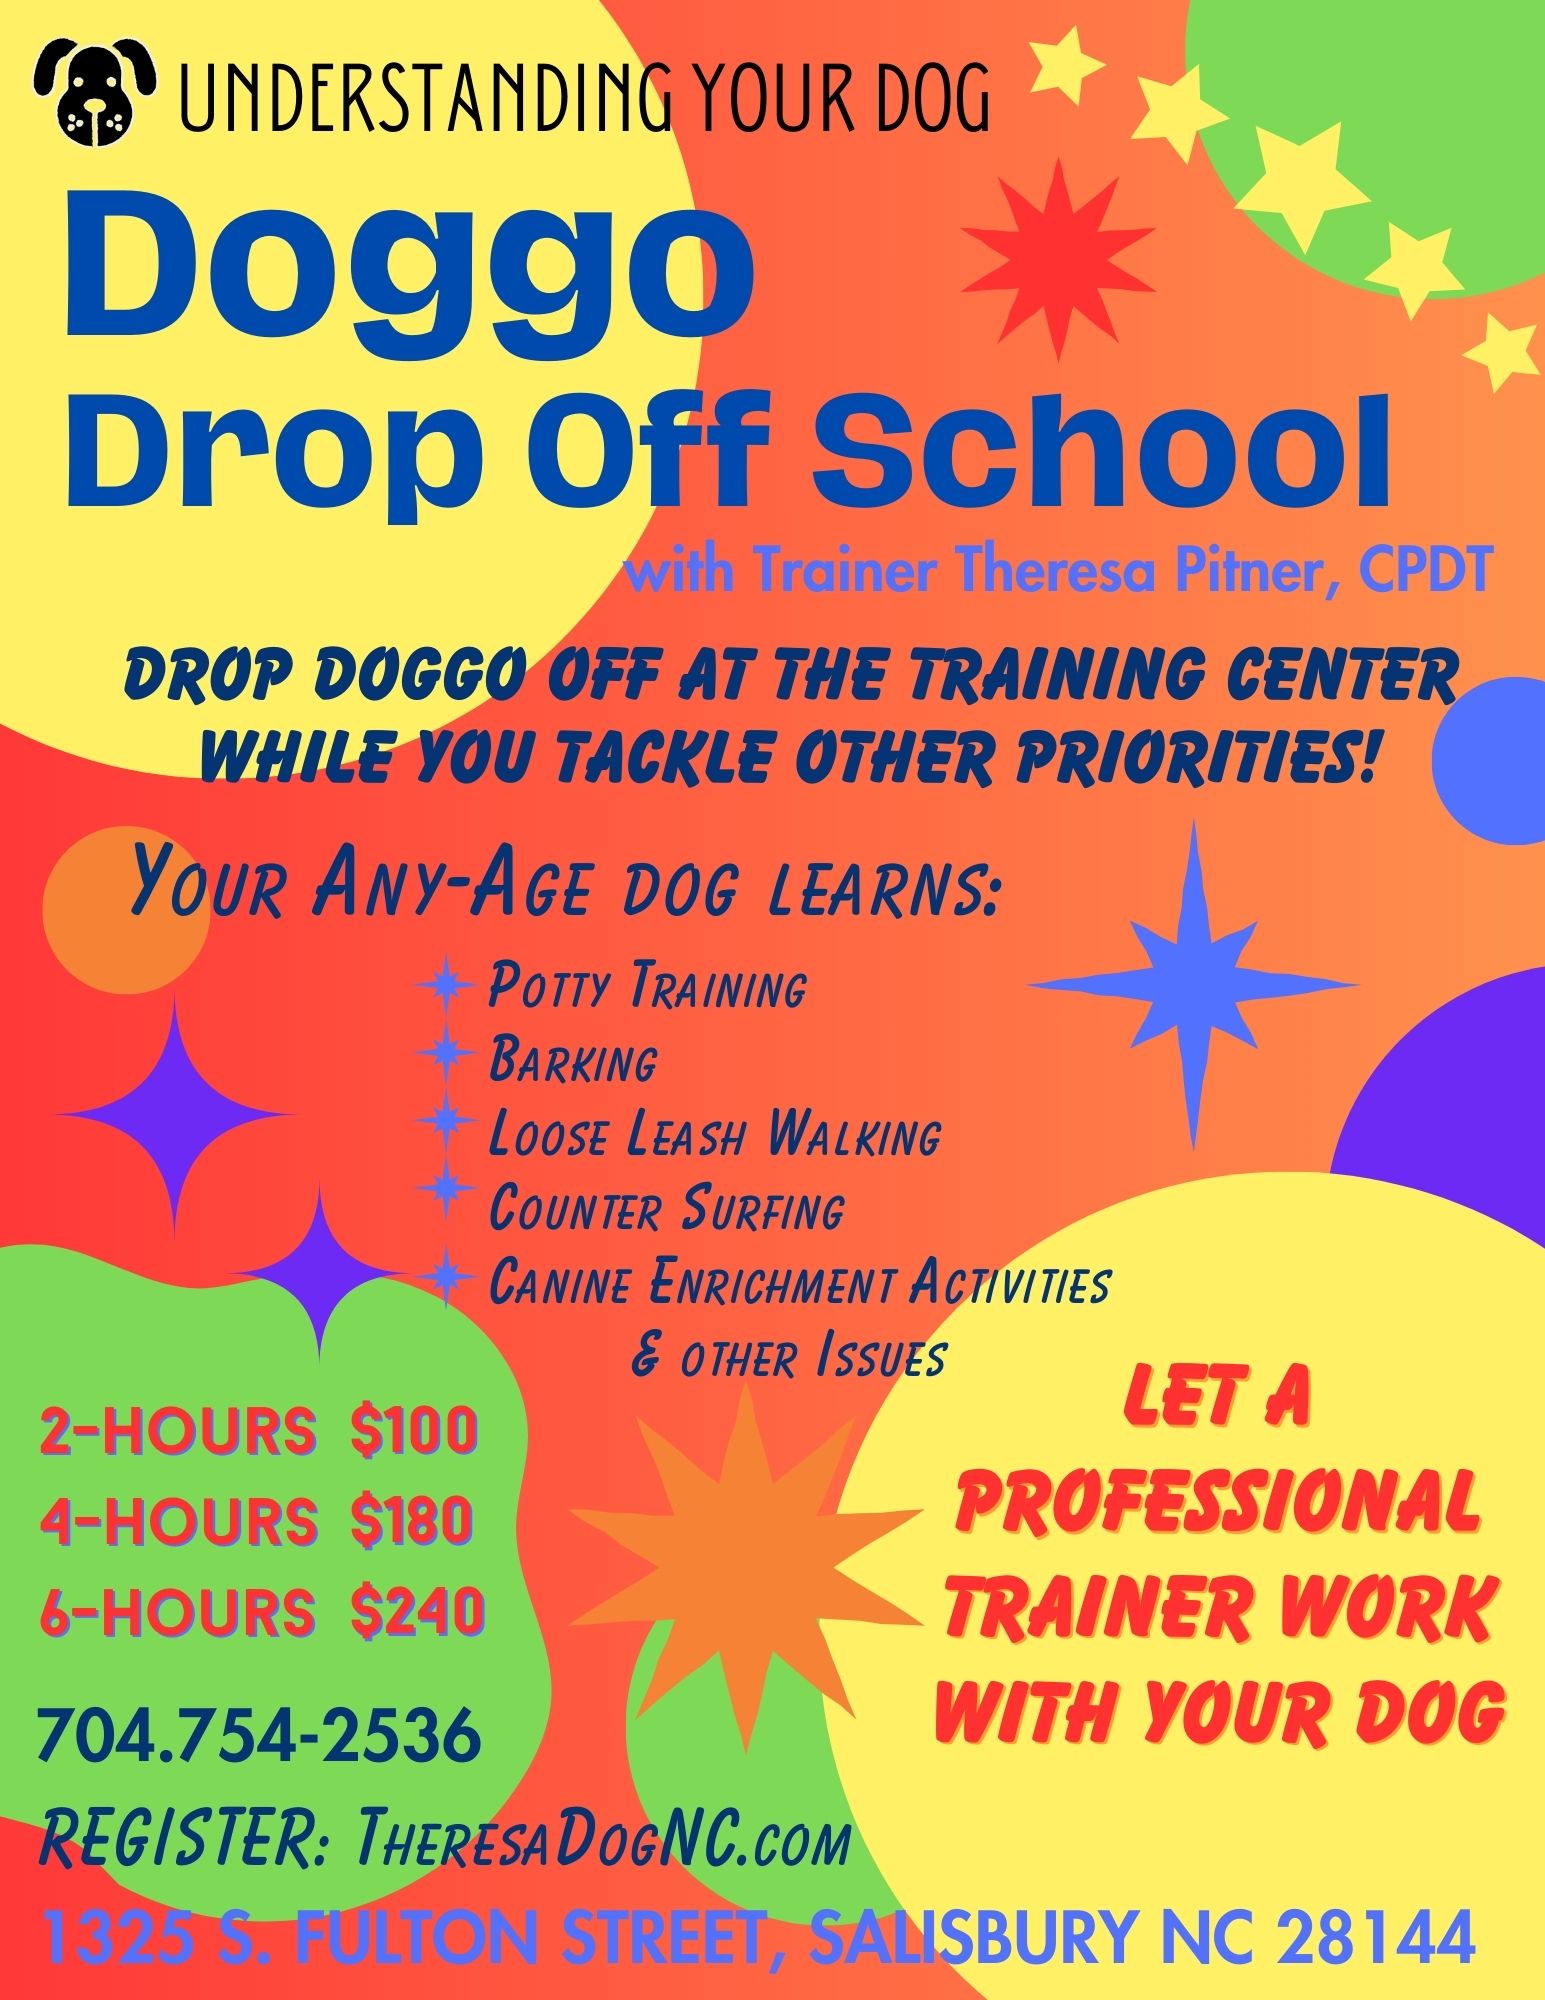 Doggo Drop Off School | Understanding Your Dog